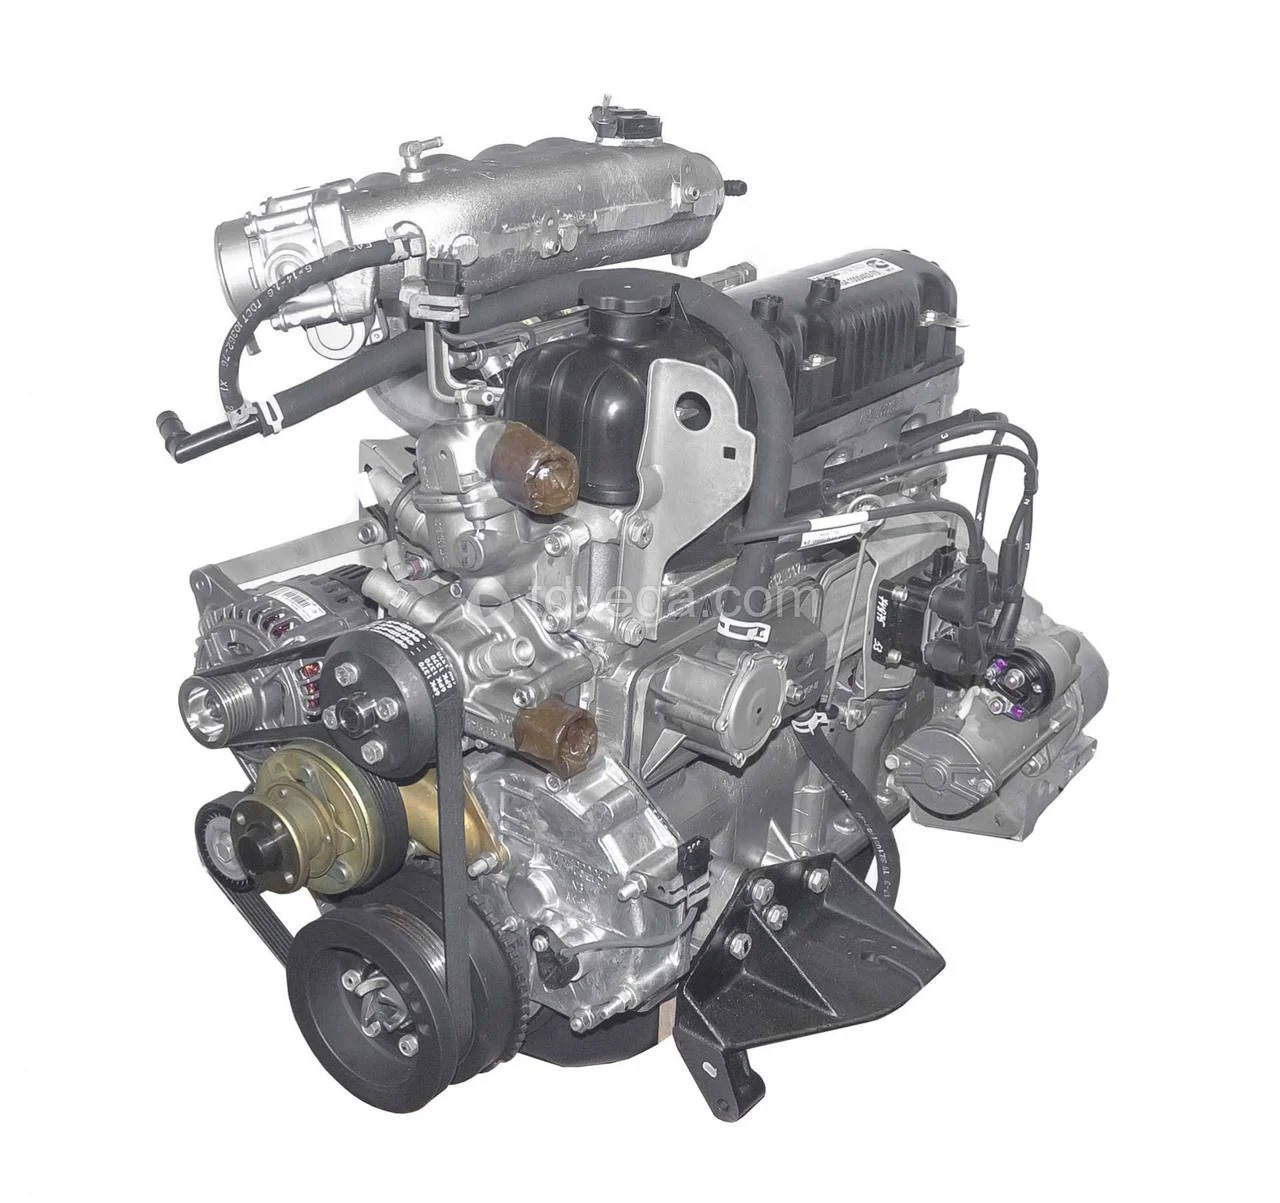 Устройство и обслуживание двигателя УМЗ-4216 на ГАЗели Бизнес